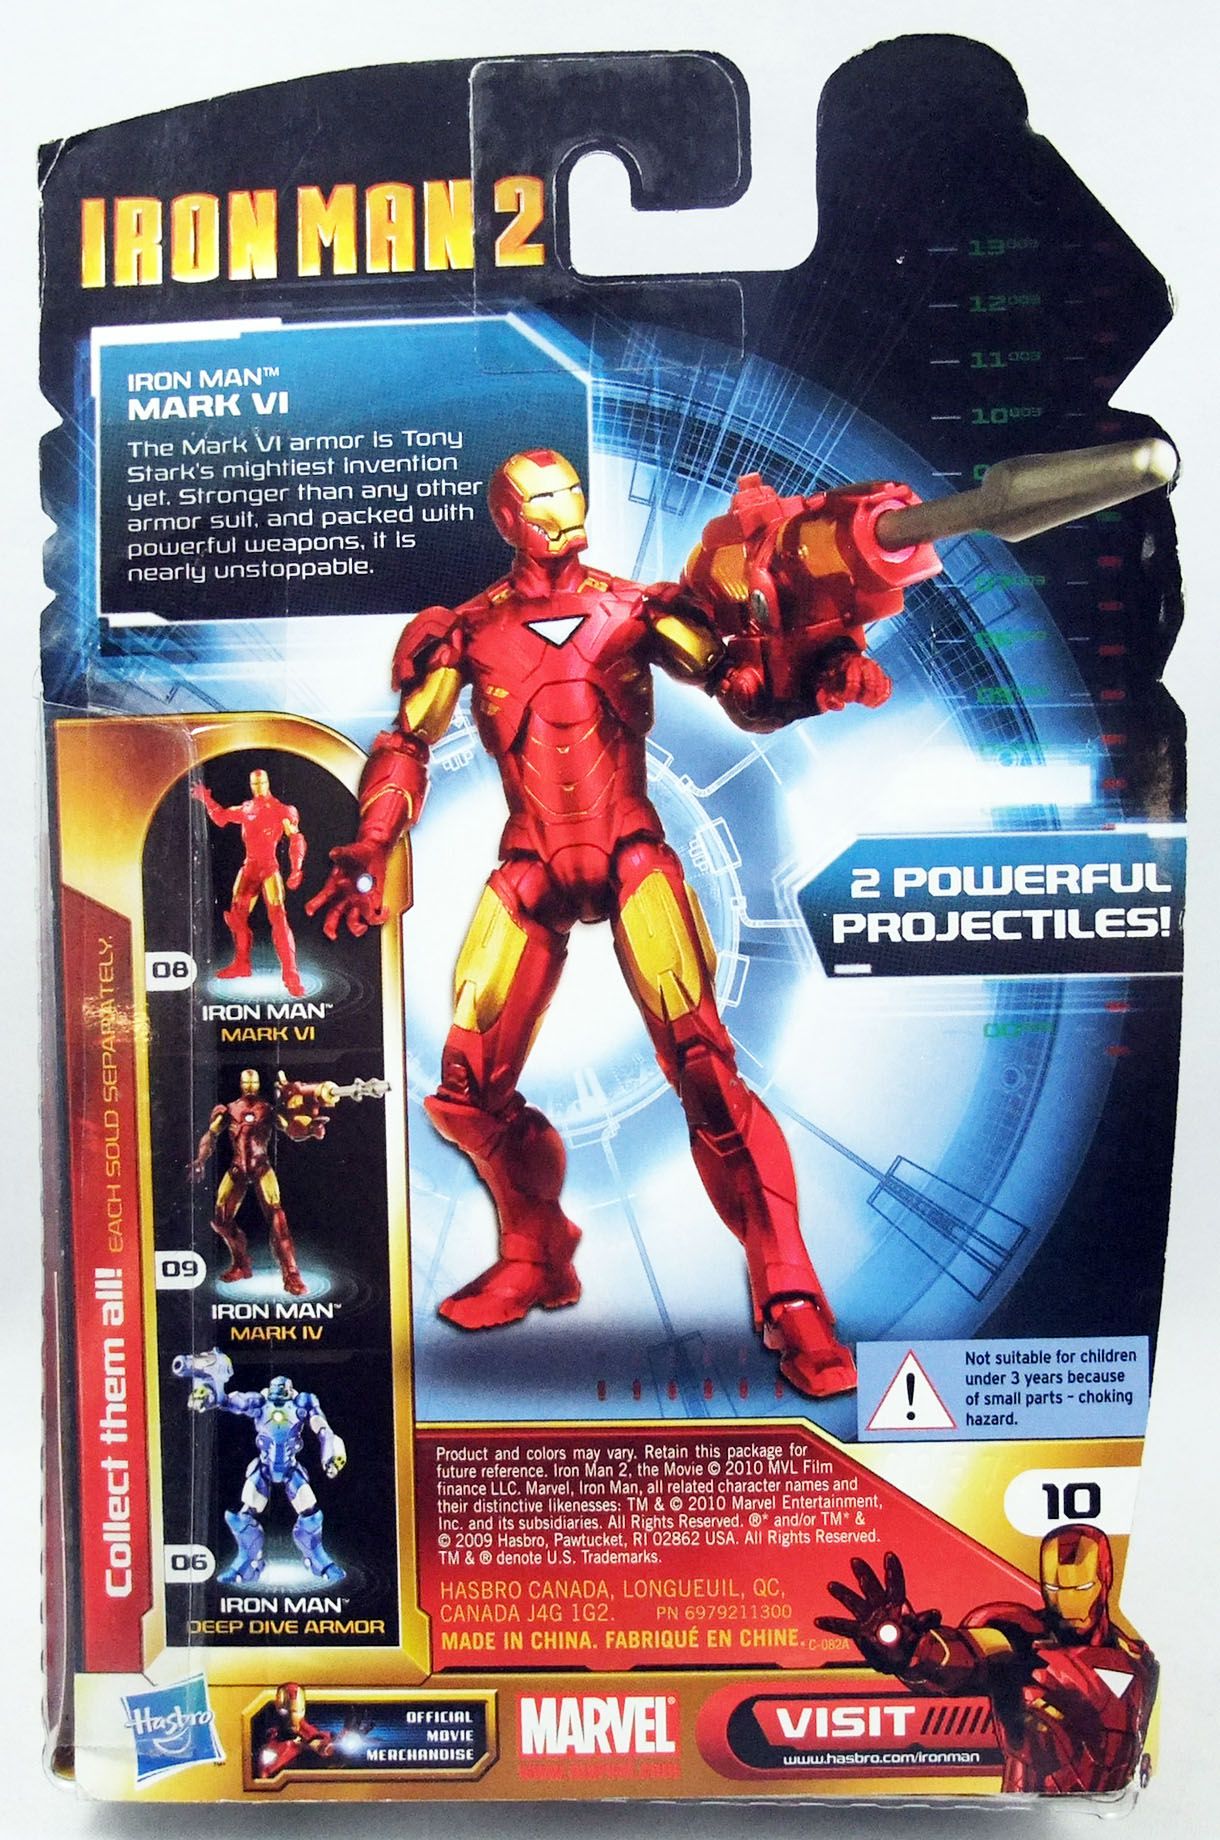 Hasbro sort de nouveaux jouets Iron Man 2